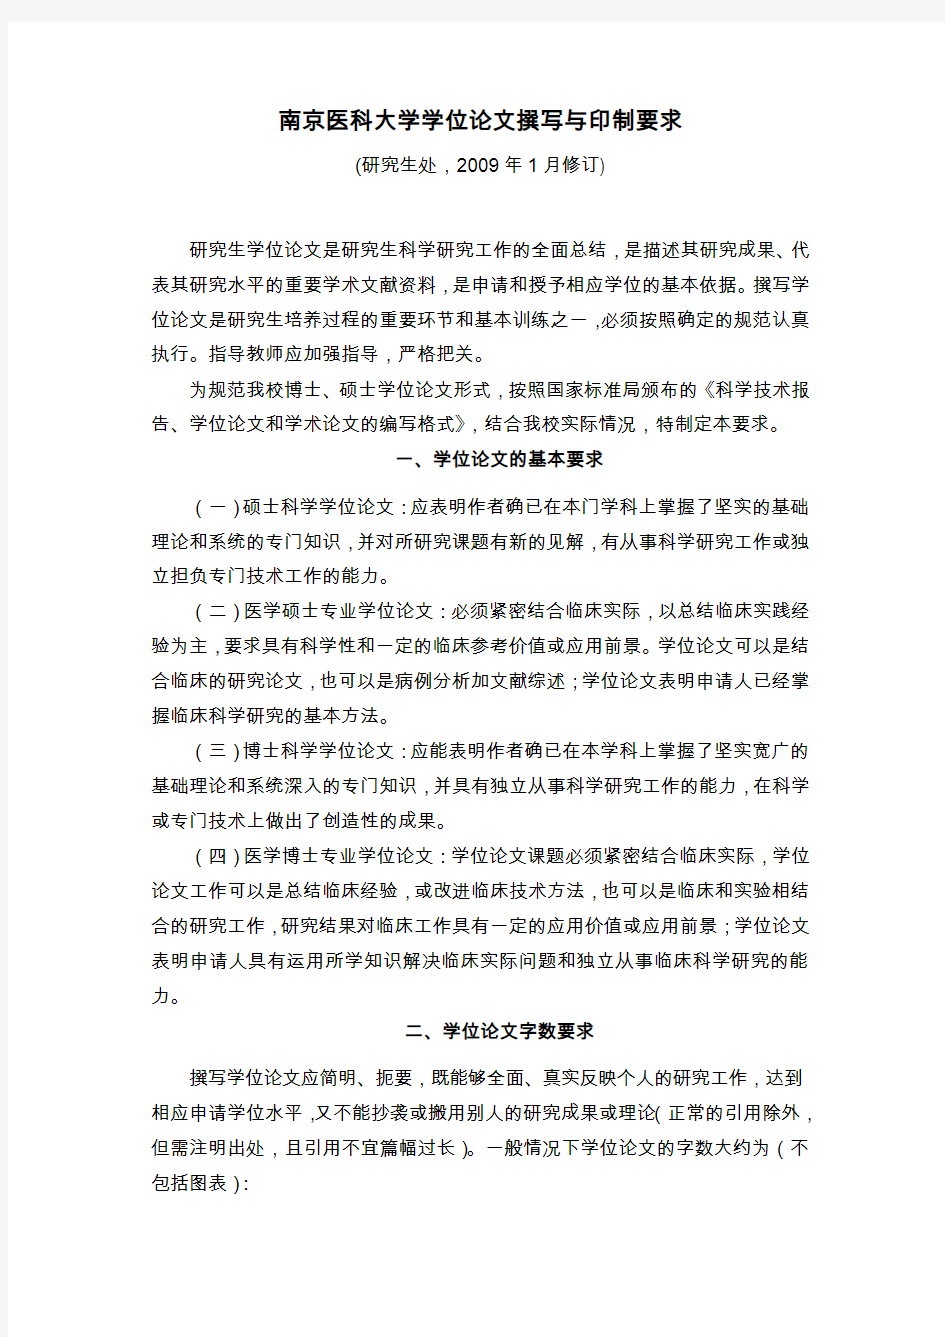 南京医科大学学位论文撰写与印制要求